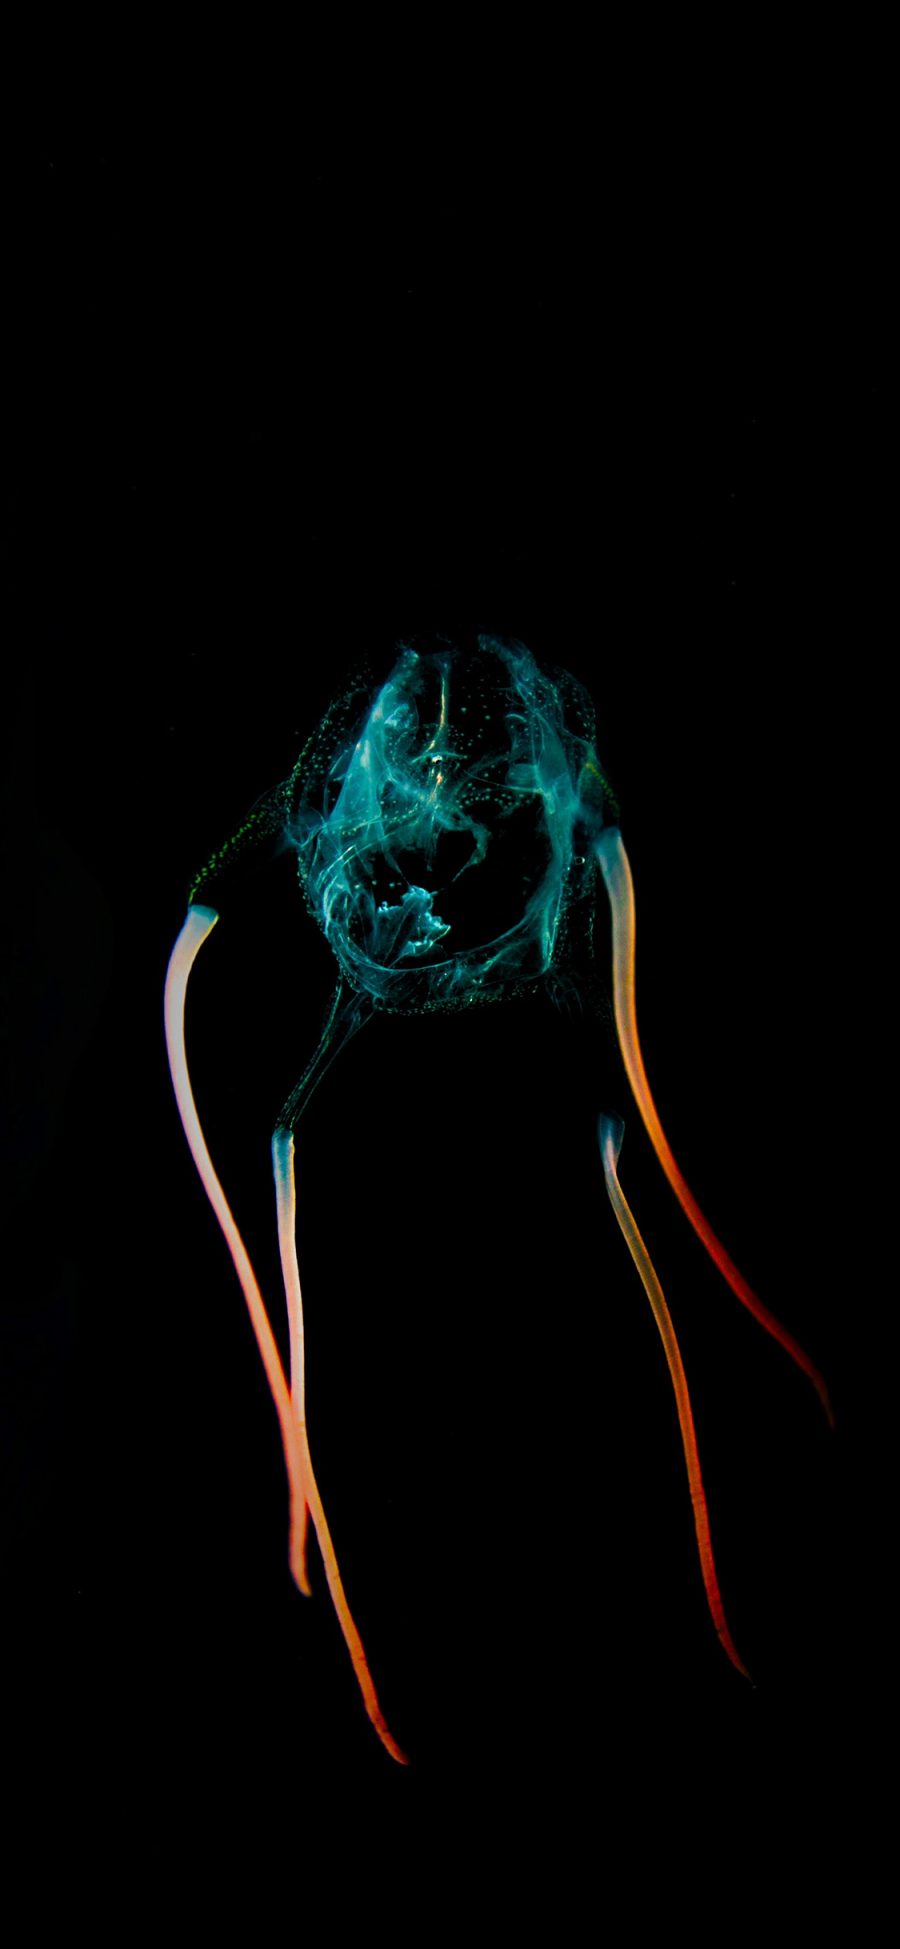 [2436×1125]海洋生物 水母 荧光 特写 苹果手机壁纸图片